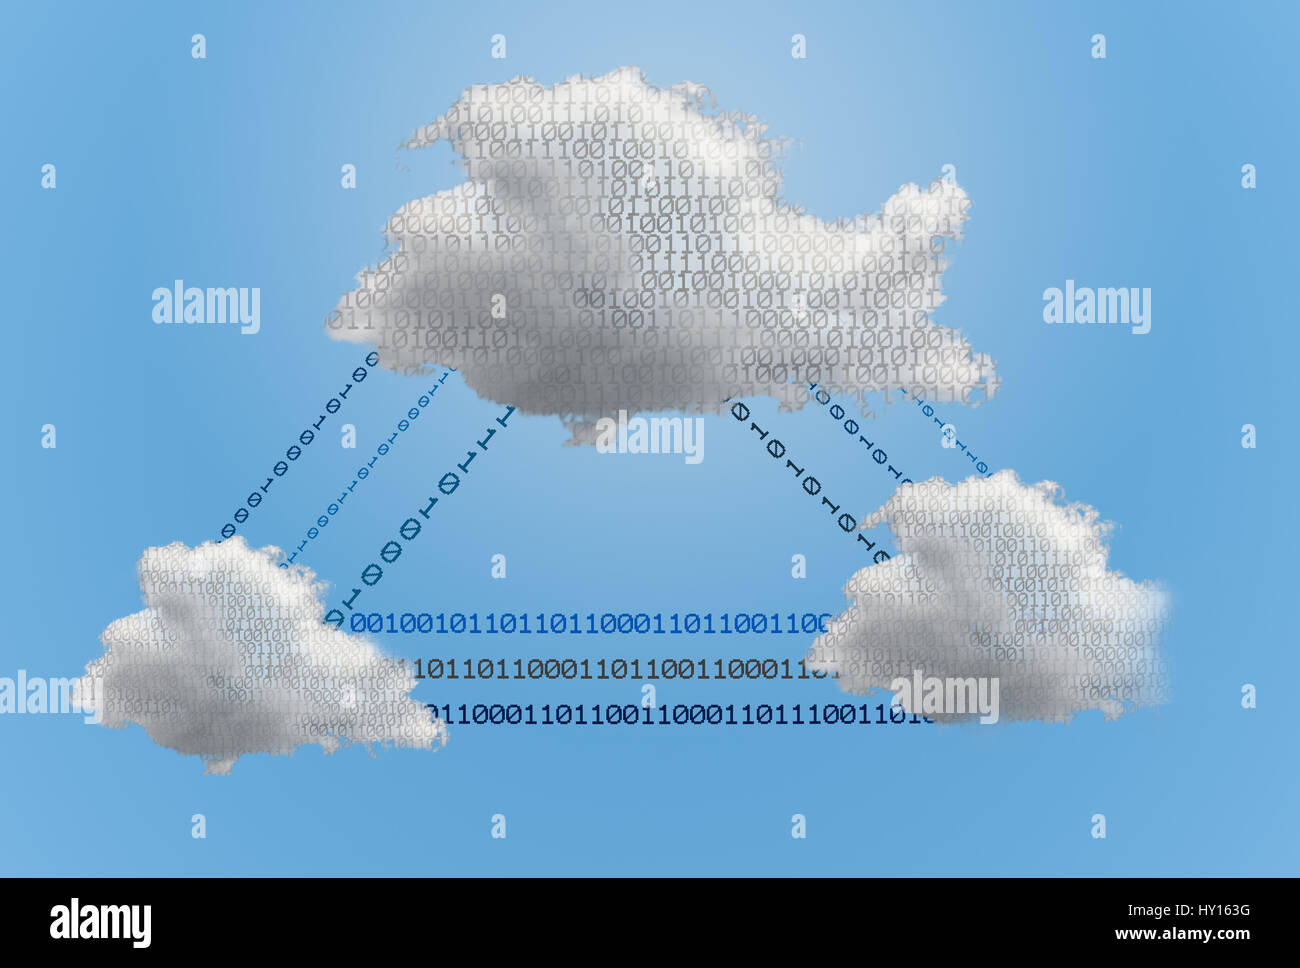 Concepto técnico - red cloud computing y aplicaciones en línea mostrando una nube digital interconectados por flujos de datos de red Foto de stock